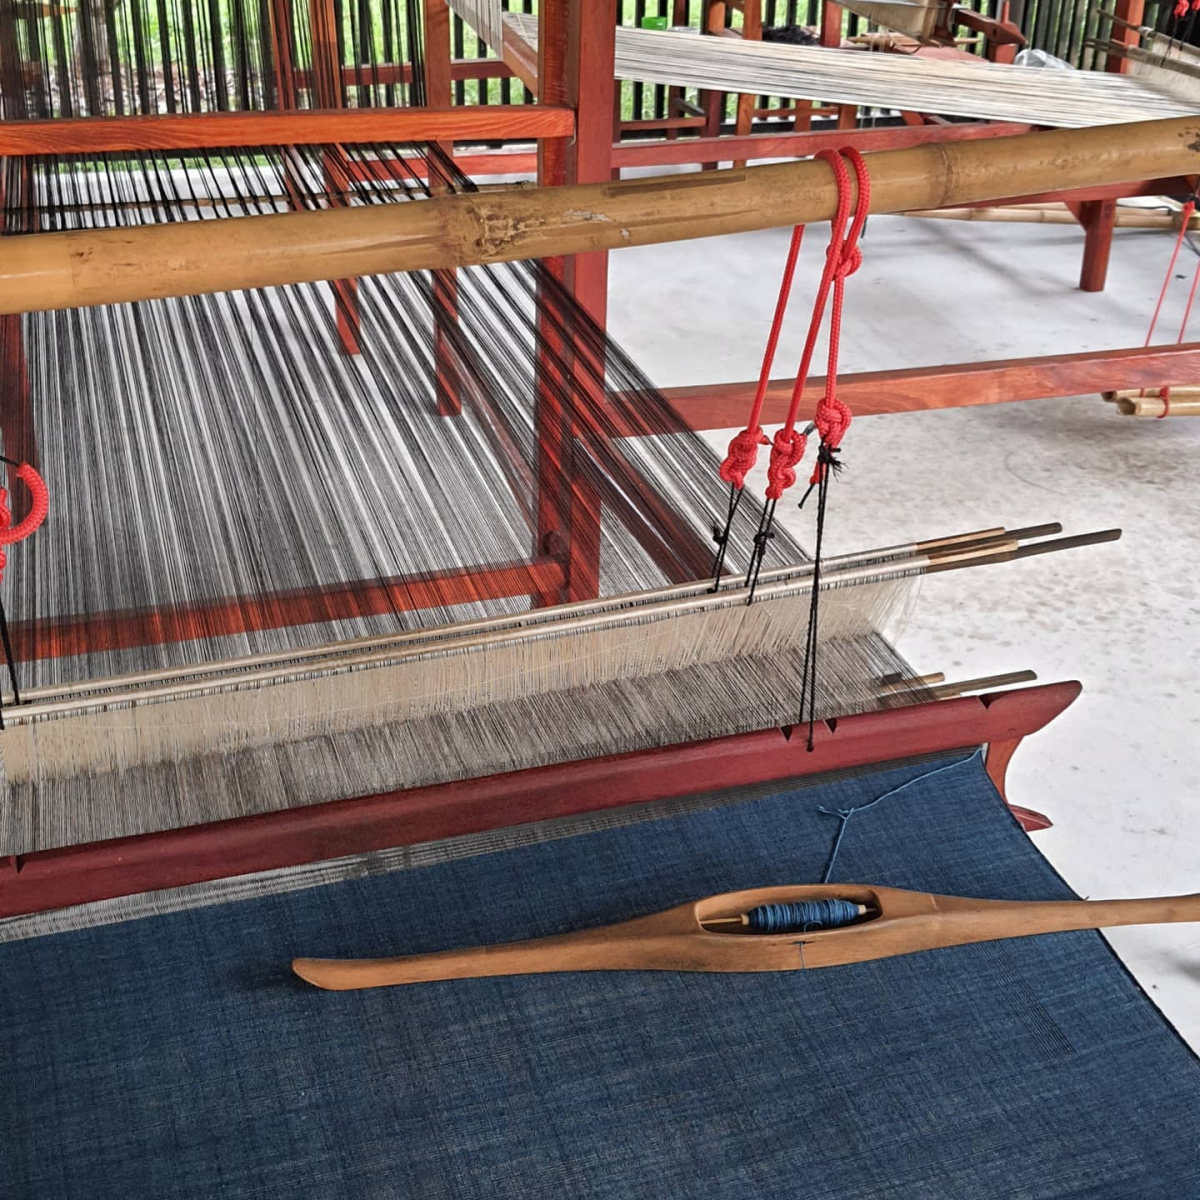 機織り機 loom